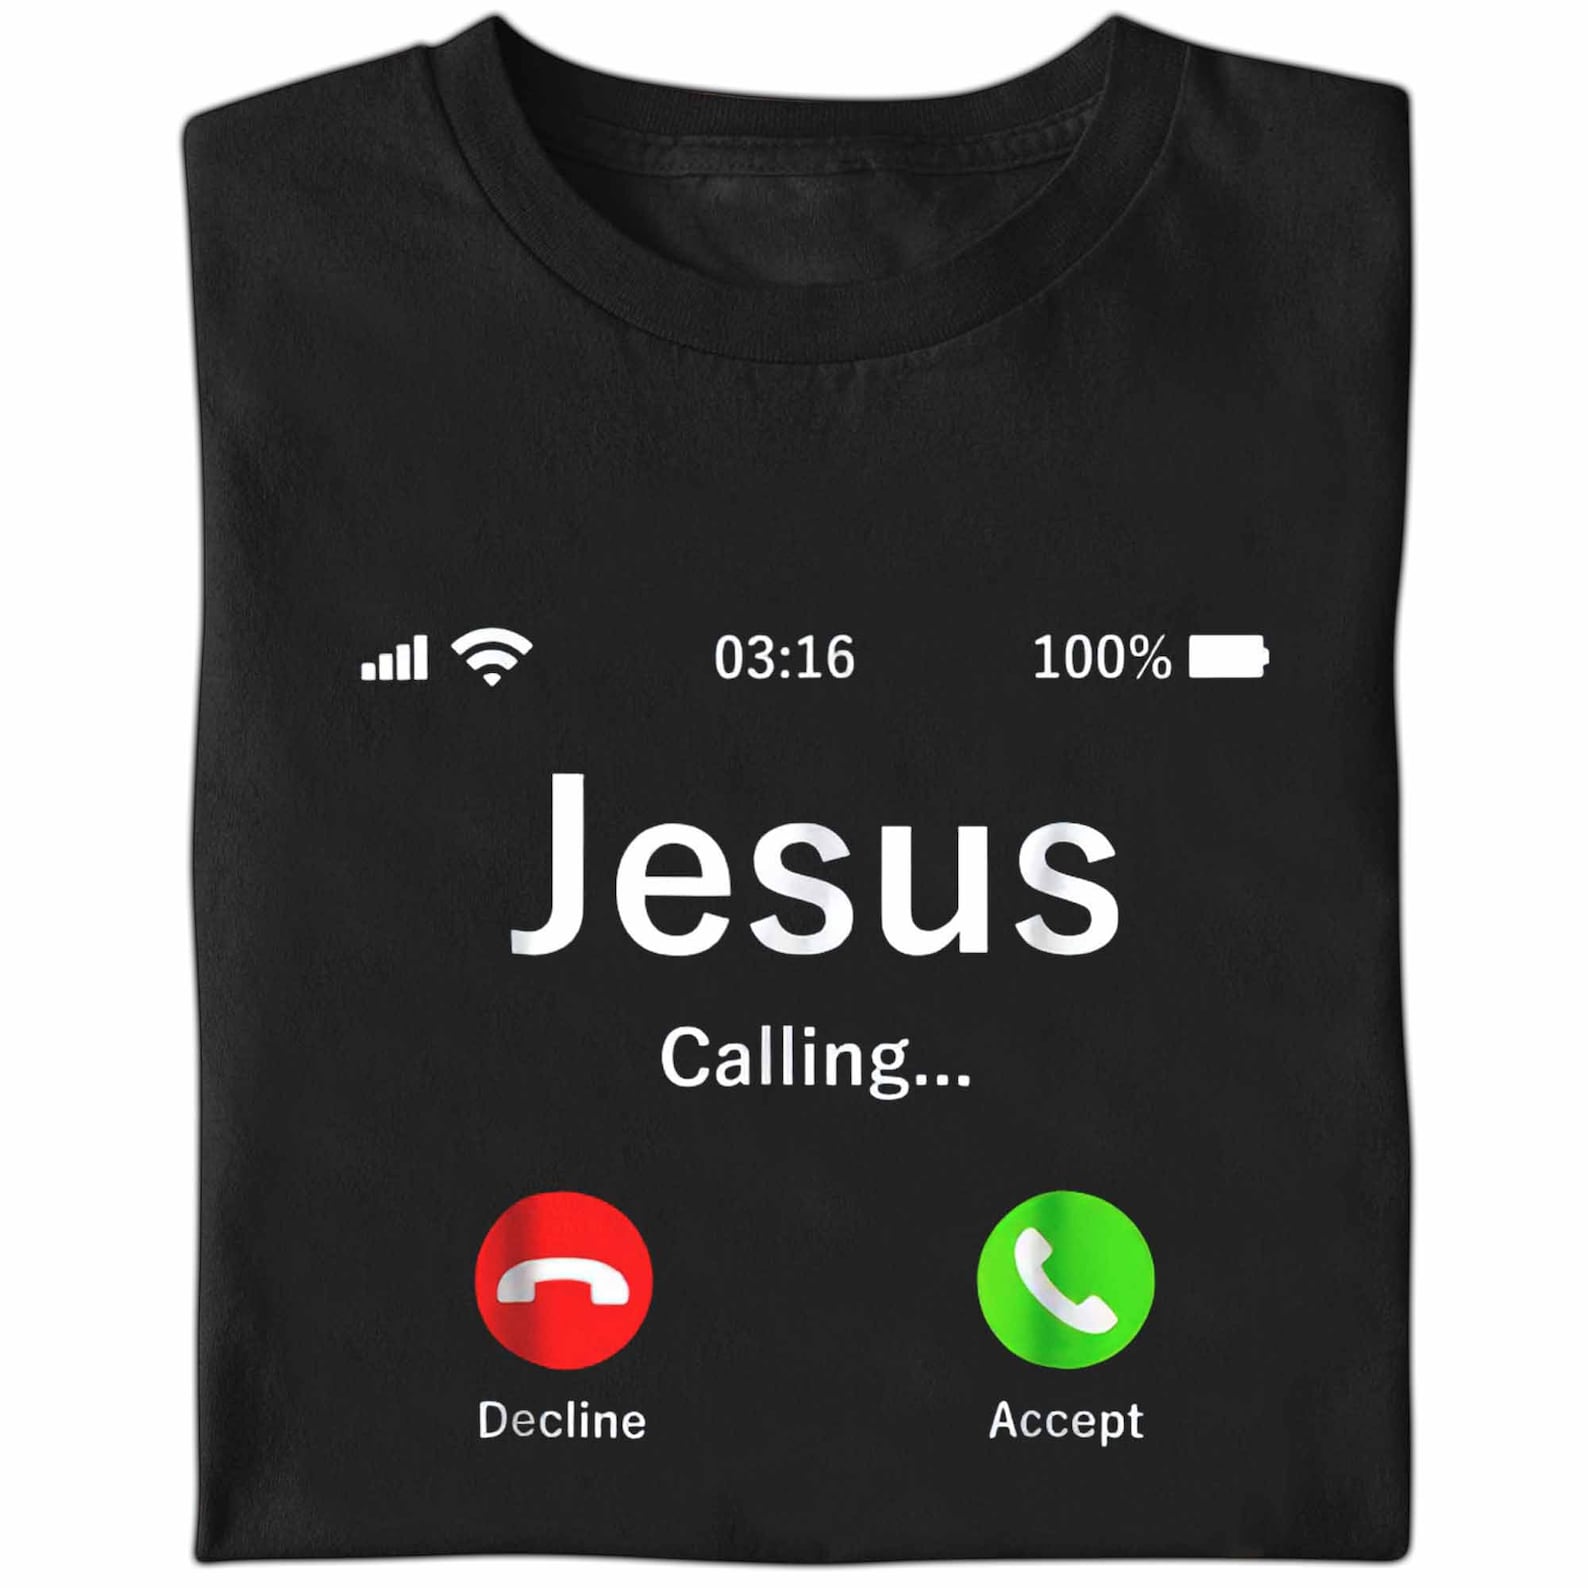 Jesus Is Calling Shirt Christian TShirt Gift For Men Women | Etsy